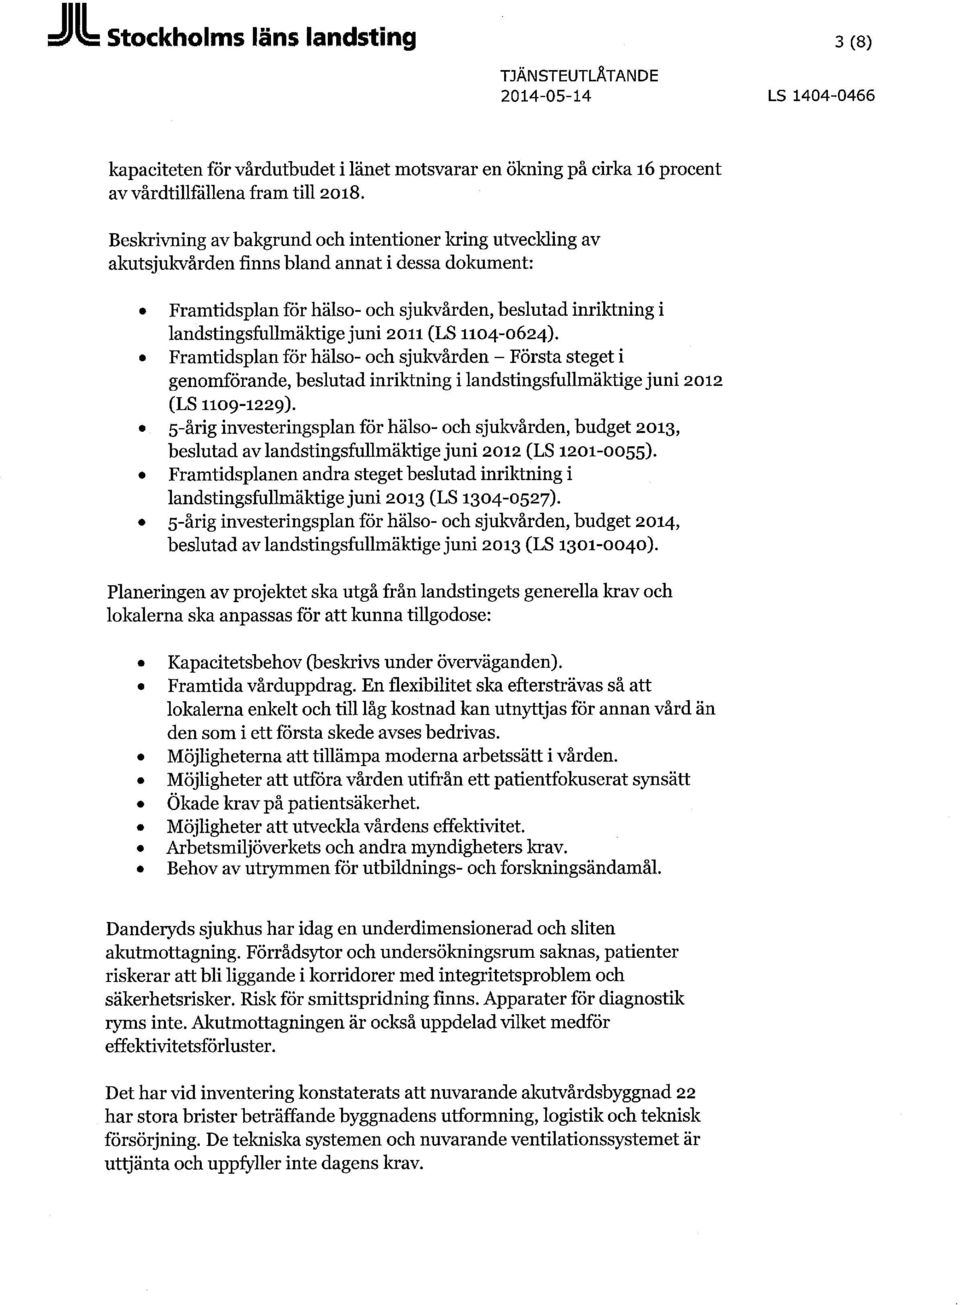 2011 (LS 1104-0624). Framtidsplan för hälso- och sjukvården - Första steget i genomförande, beslutad inriktning i landstingsfullmäktige juni 2012 (LS 1109-1229).